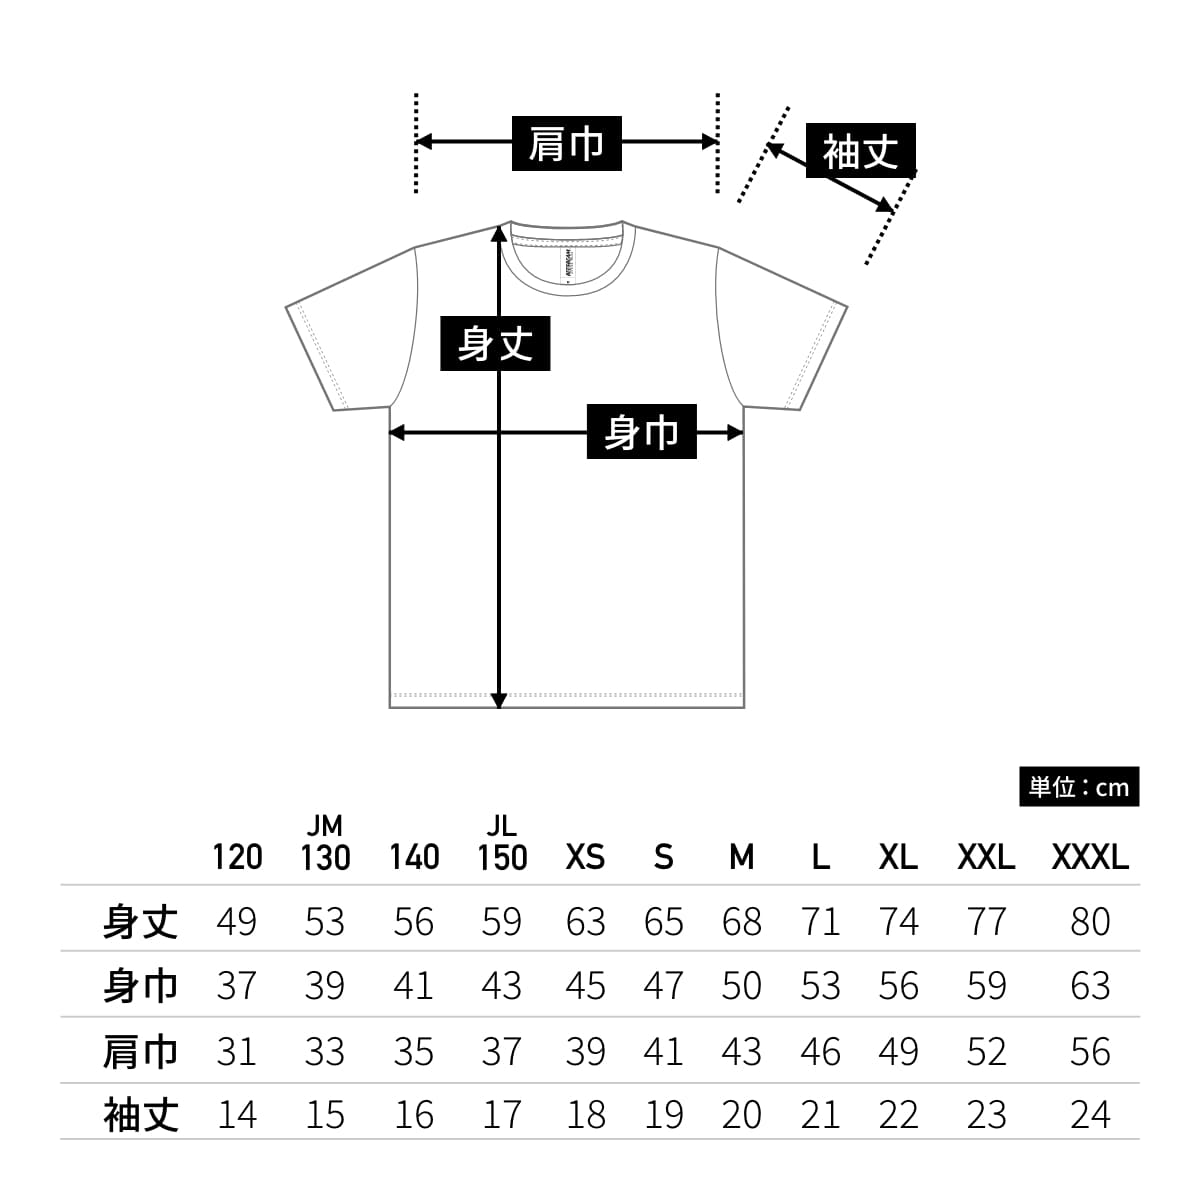 ファンクショナルドライTシャツ | メンズ | 1枚 | FDT-100 | ホワイト